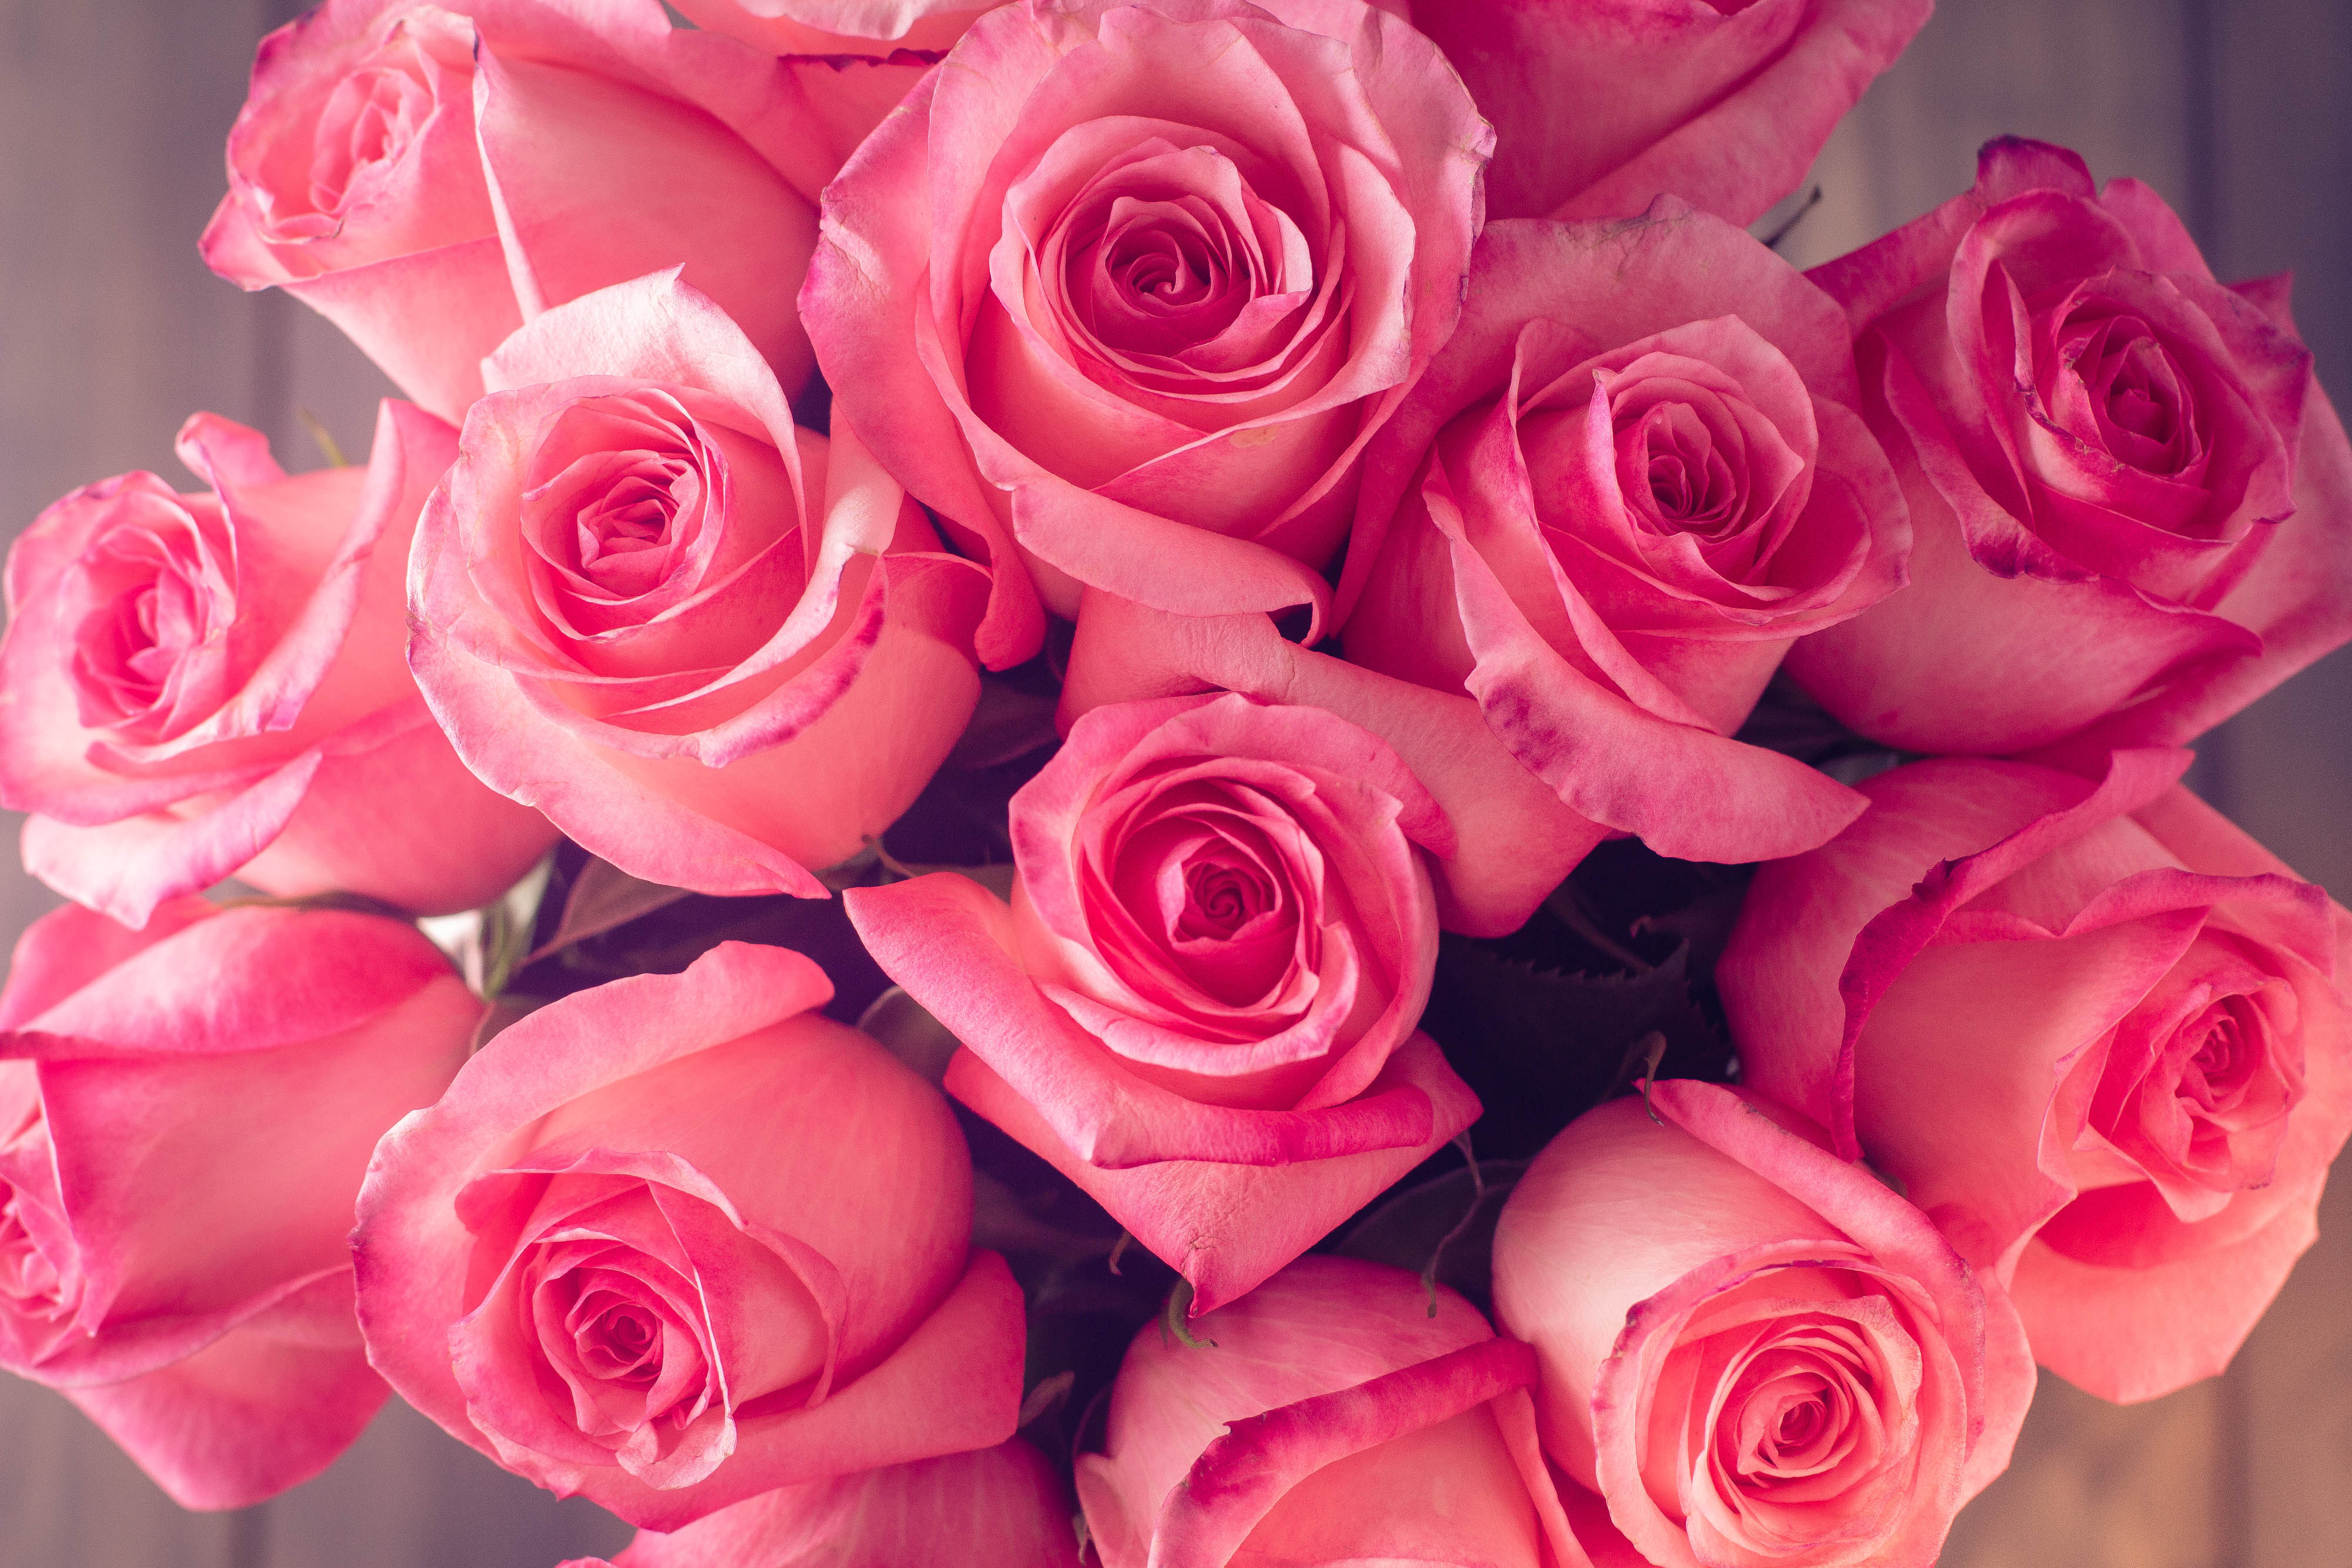 Покажи фотографию роз. Розовые розы. Розовая коза. Шикарные розовые розы. Красивый букет роз.